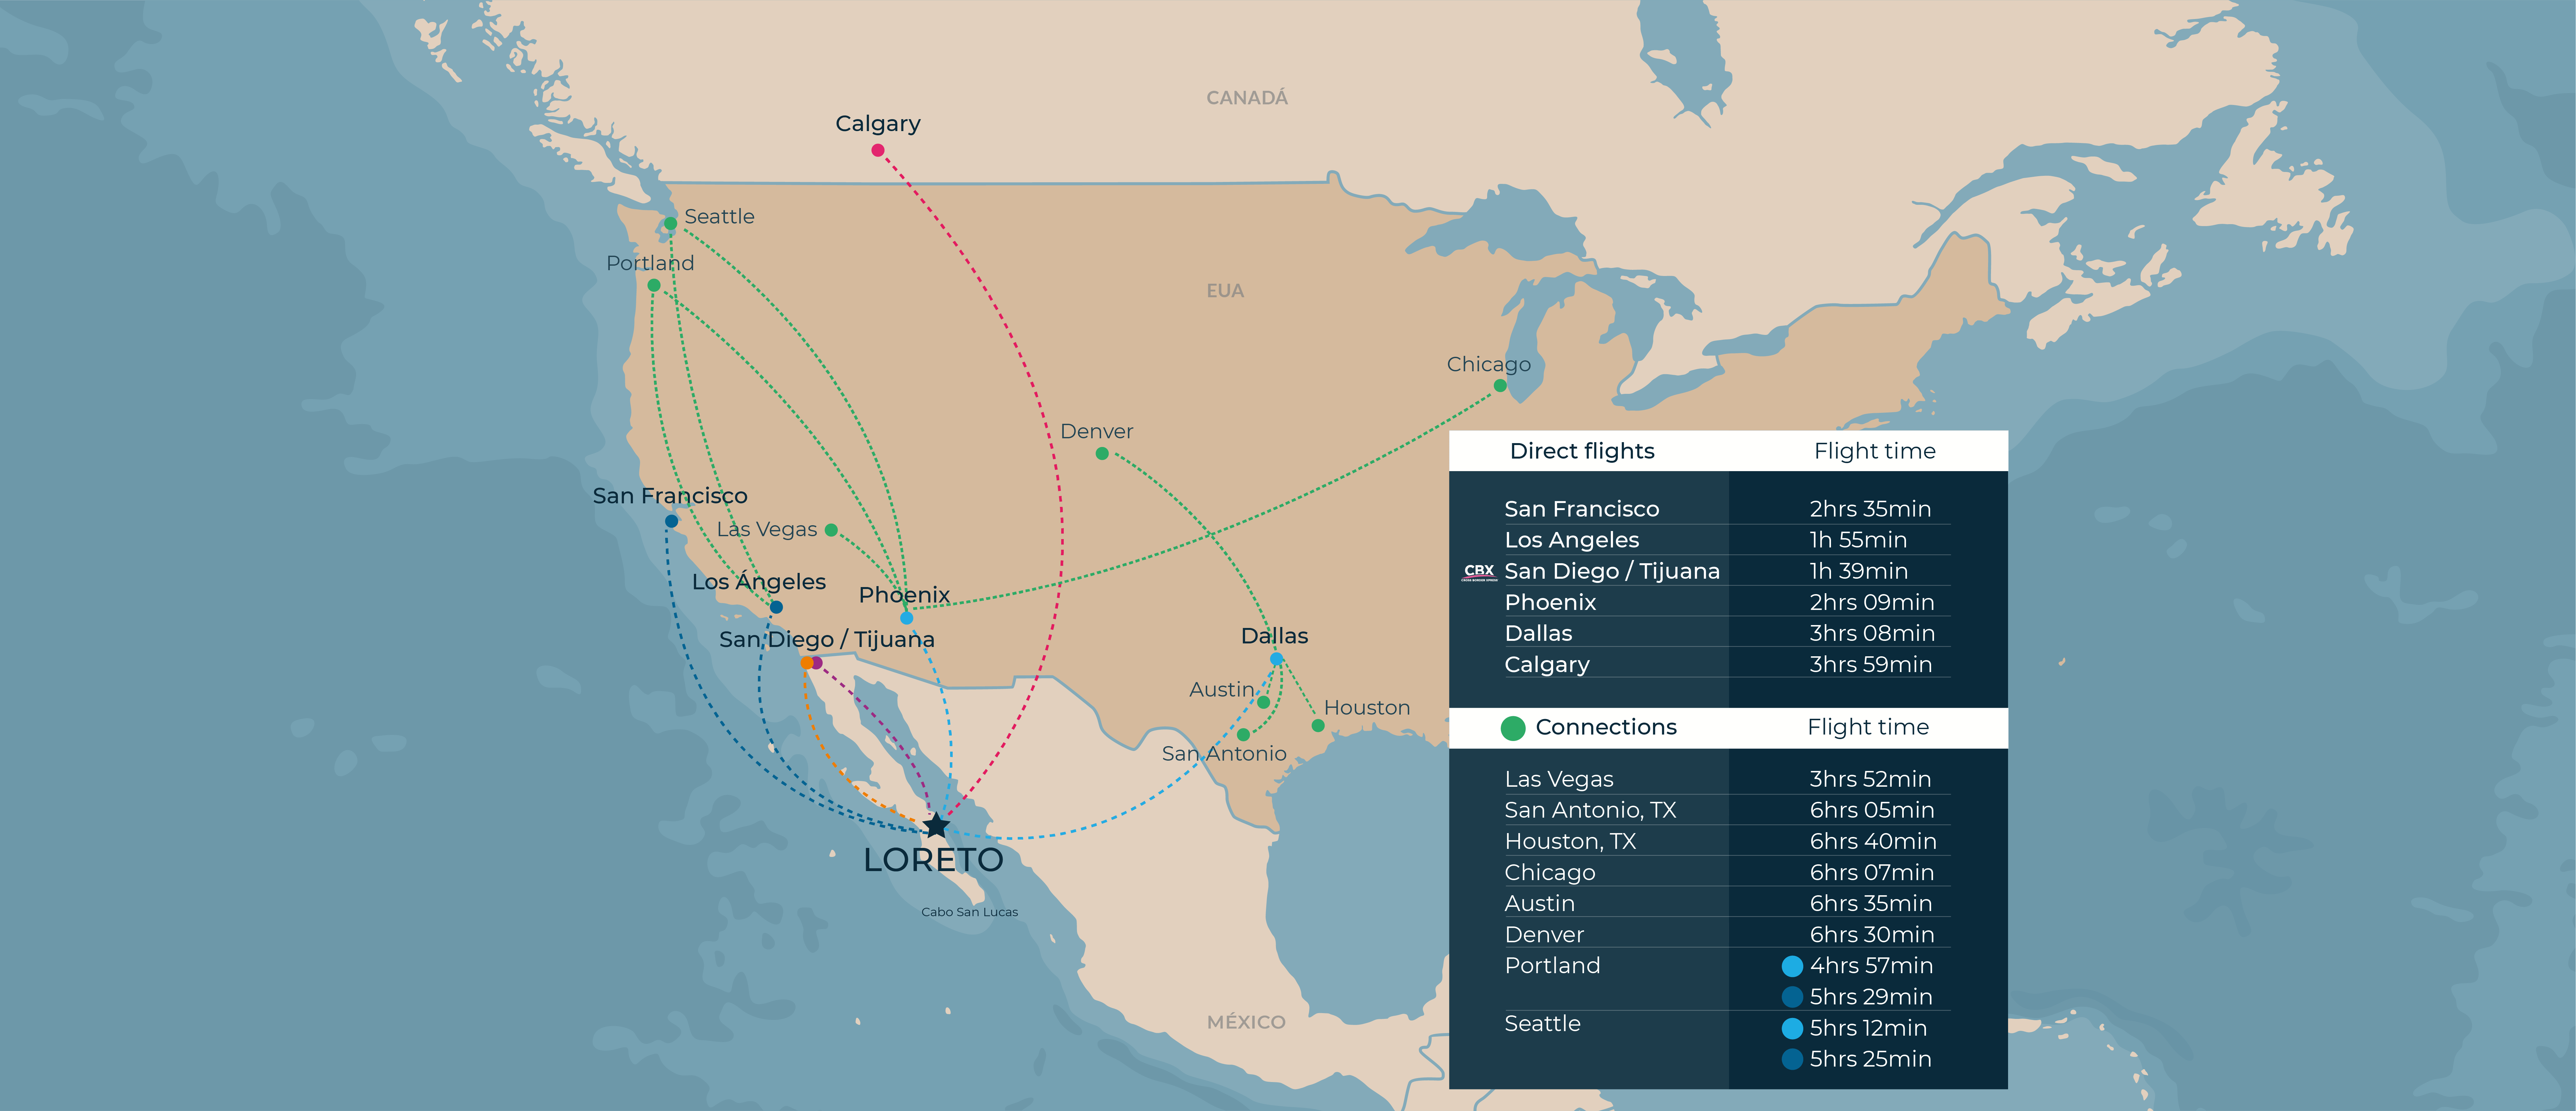 Flights map desktop en